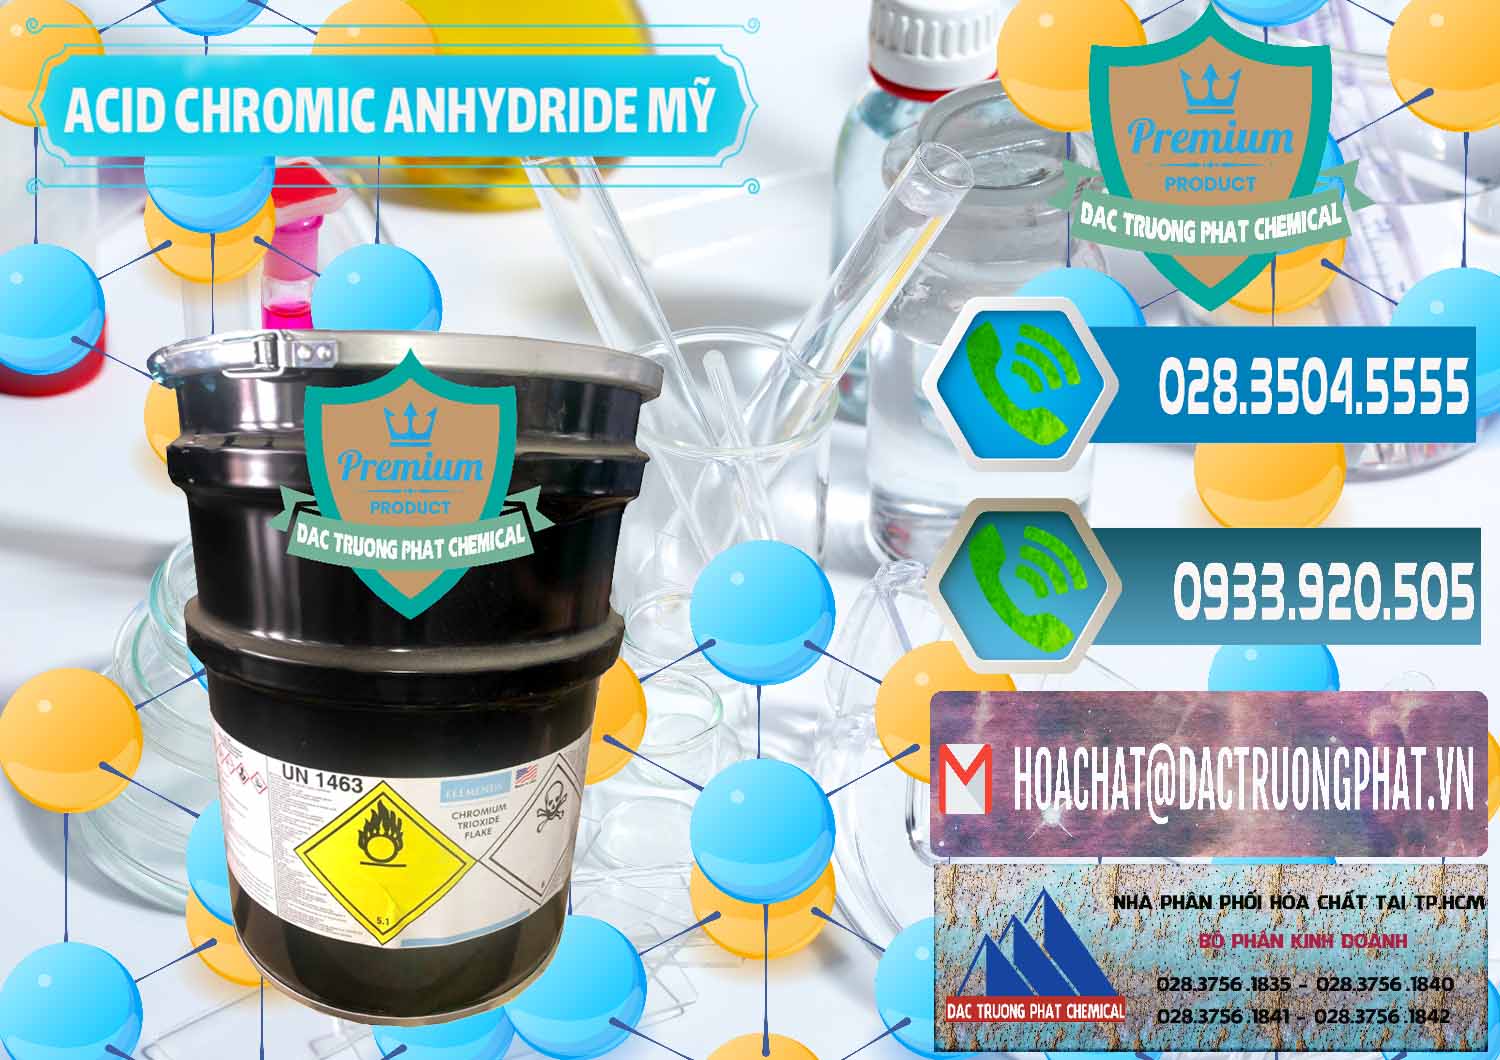 Nơi bán & cung cấp Acid Chromic Anhydride - Cromic CRO3 USA Mỹ - 0364 - Đơn vị chuyên nhập khẩu và phân phối hóa chất tại TP.HCM - congtyhoachat.net